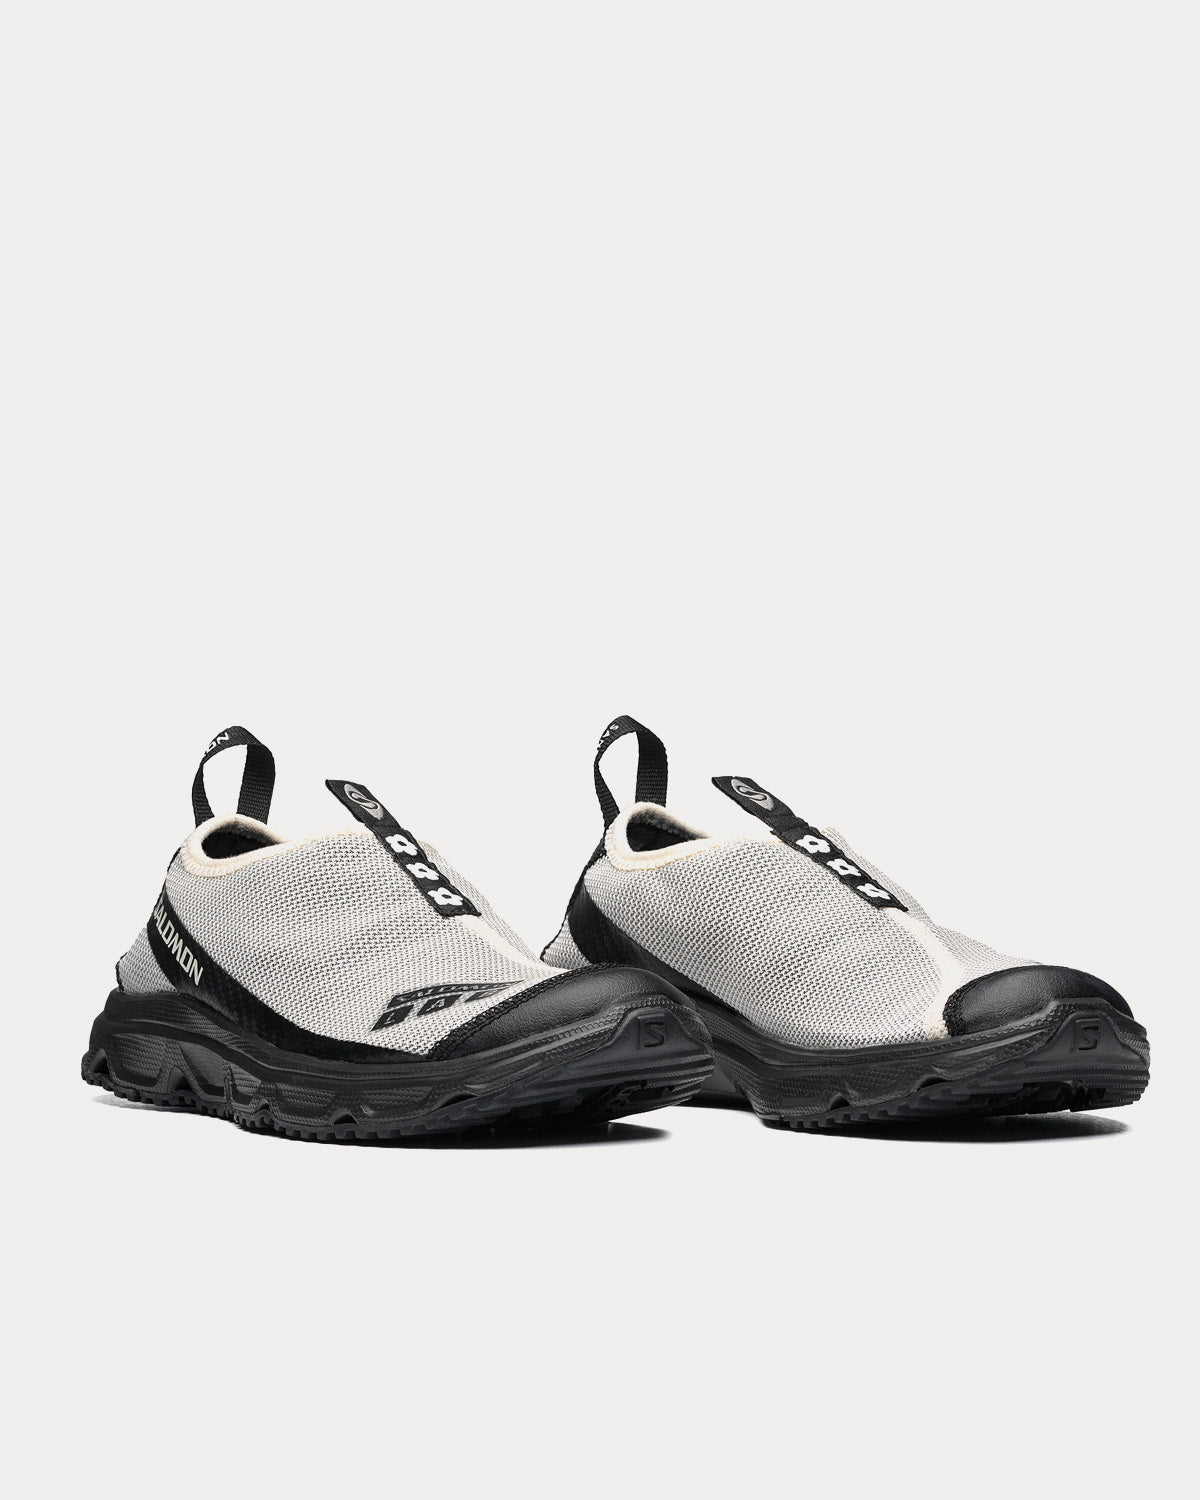 Salomon x Sandy Liang - RX Moc 3.0 Black / White Slip On Sneakers